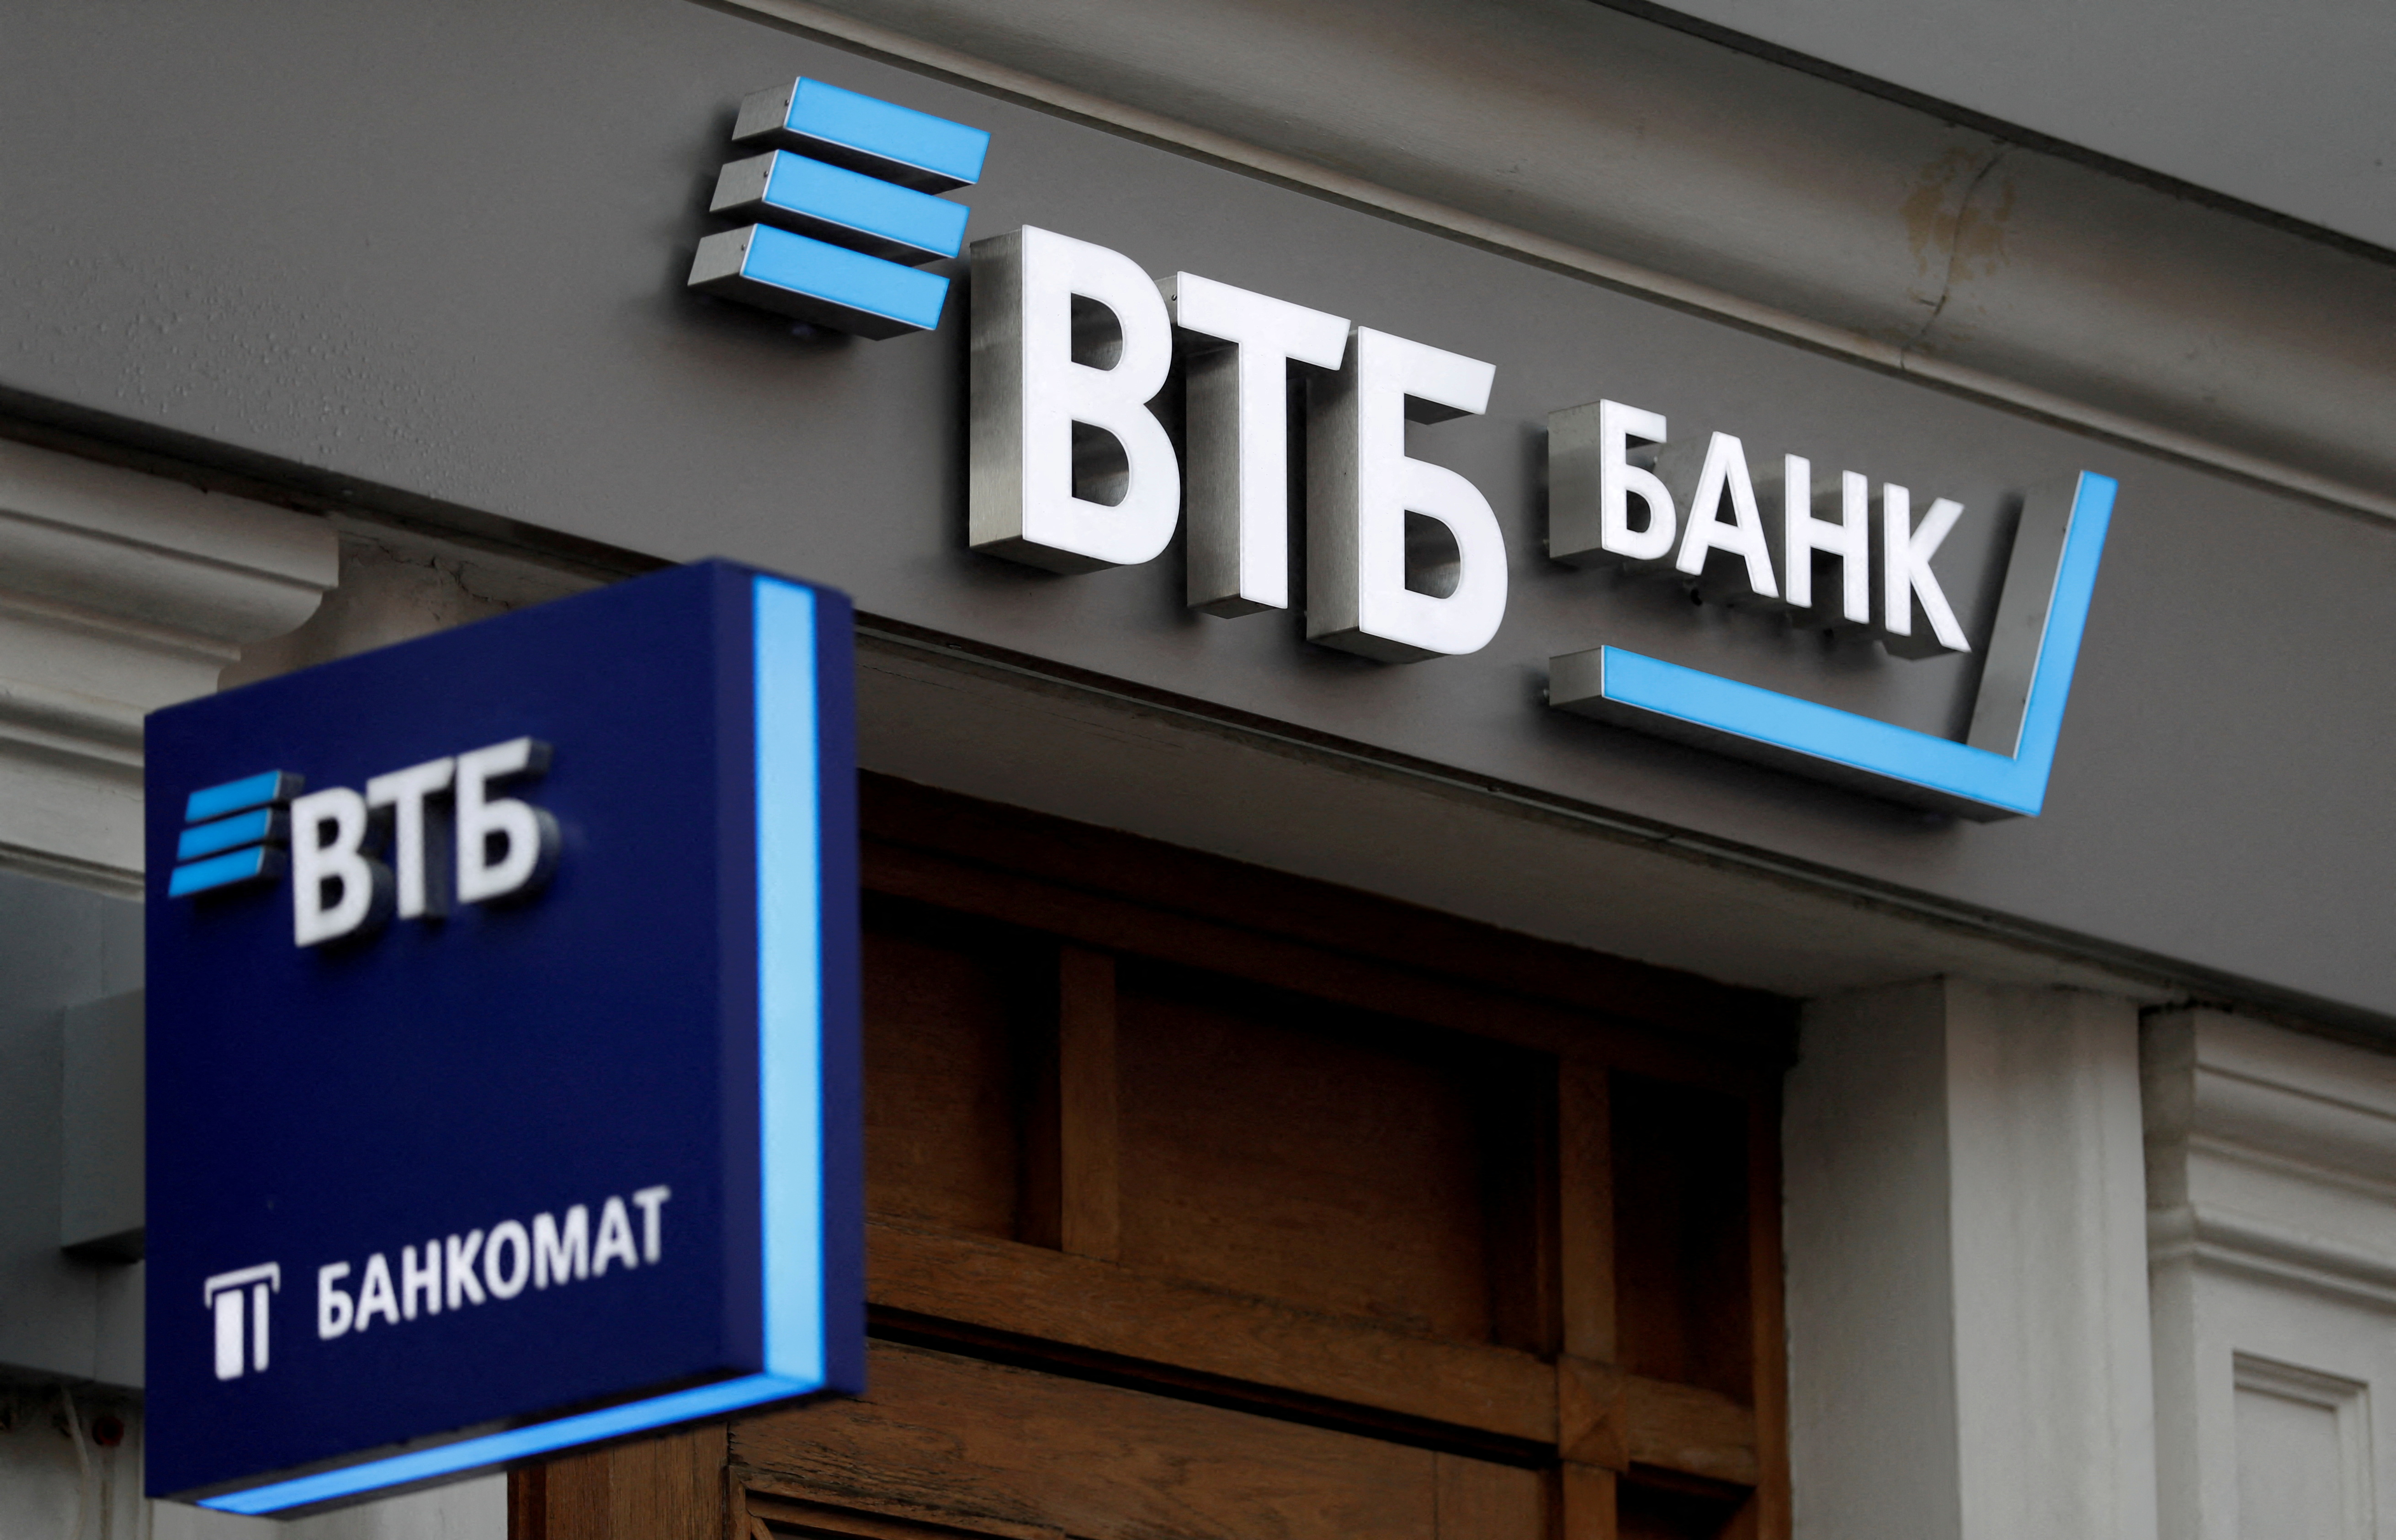 Las pancartas se muestran fuera de una sucursal del banco VTB en Moscú, Rusia, el 30 de mayo de 2019. REUTERS / Evgenia Novozhenina